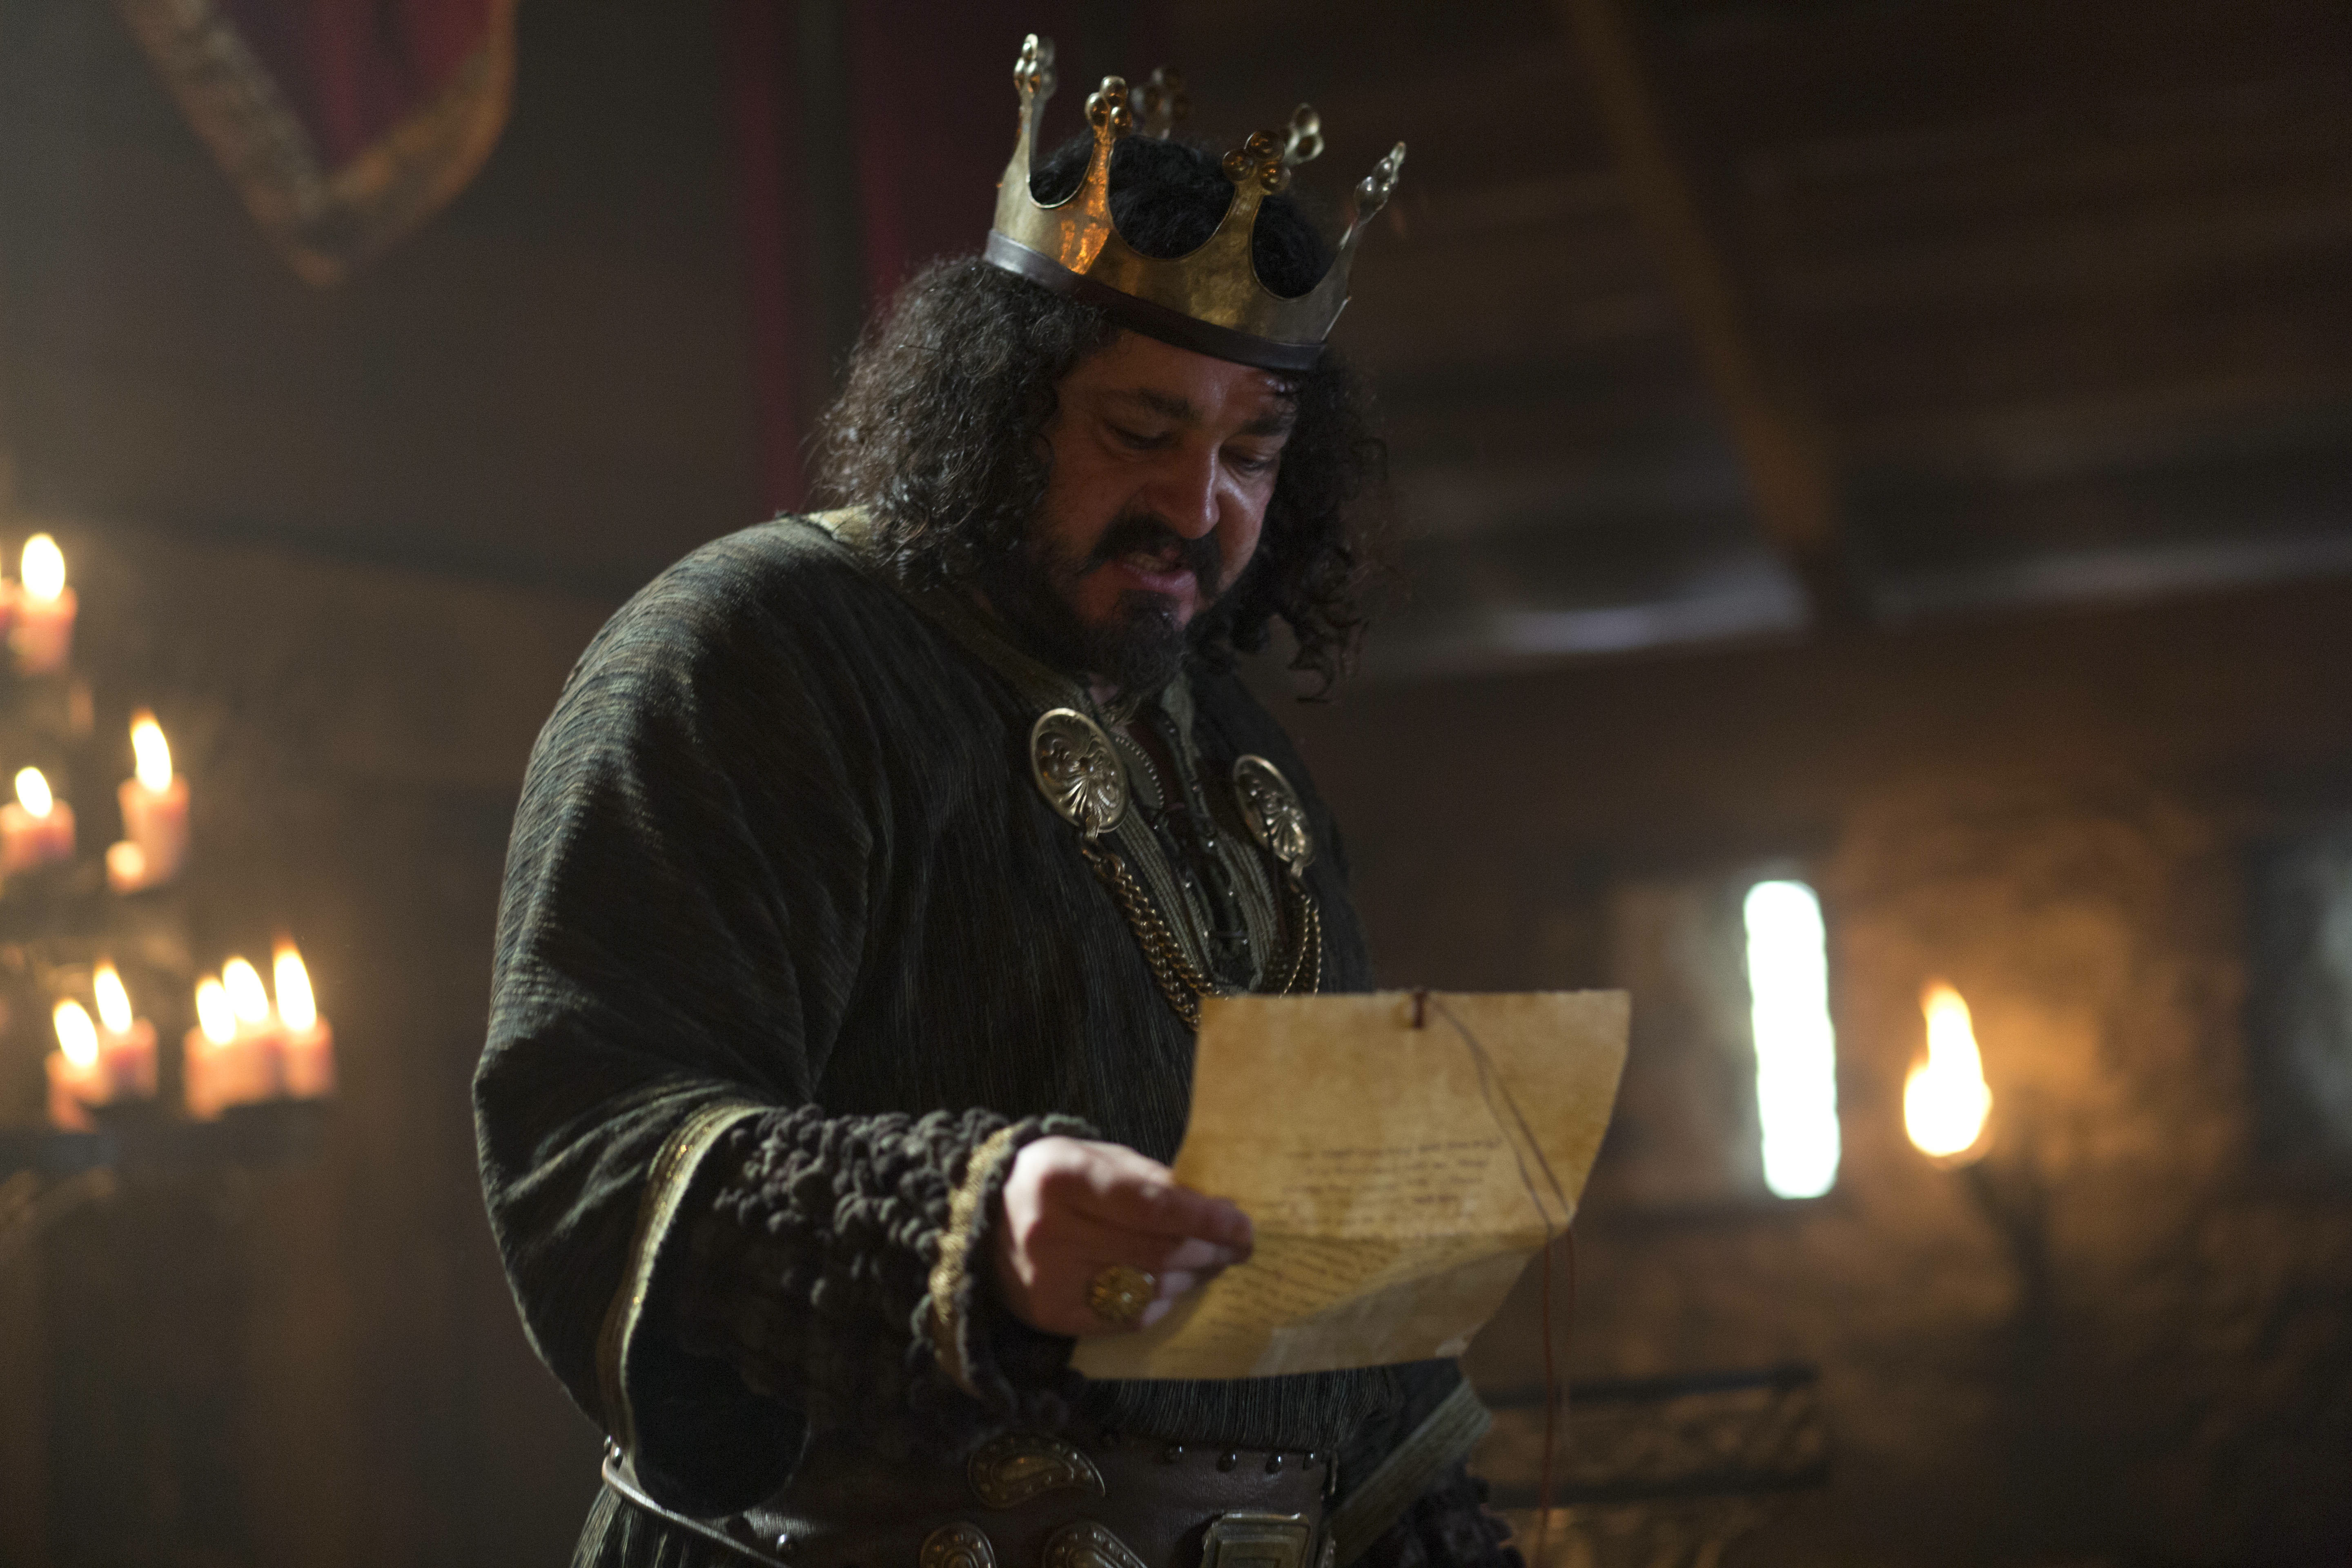 Ivan Kaye as King Aelle in 'Vikings' 2013